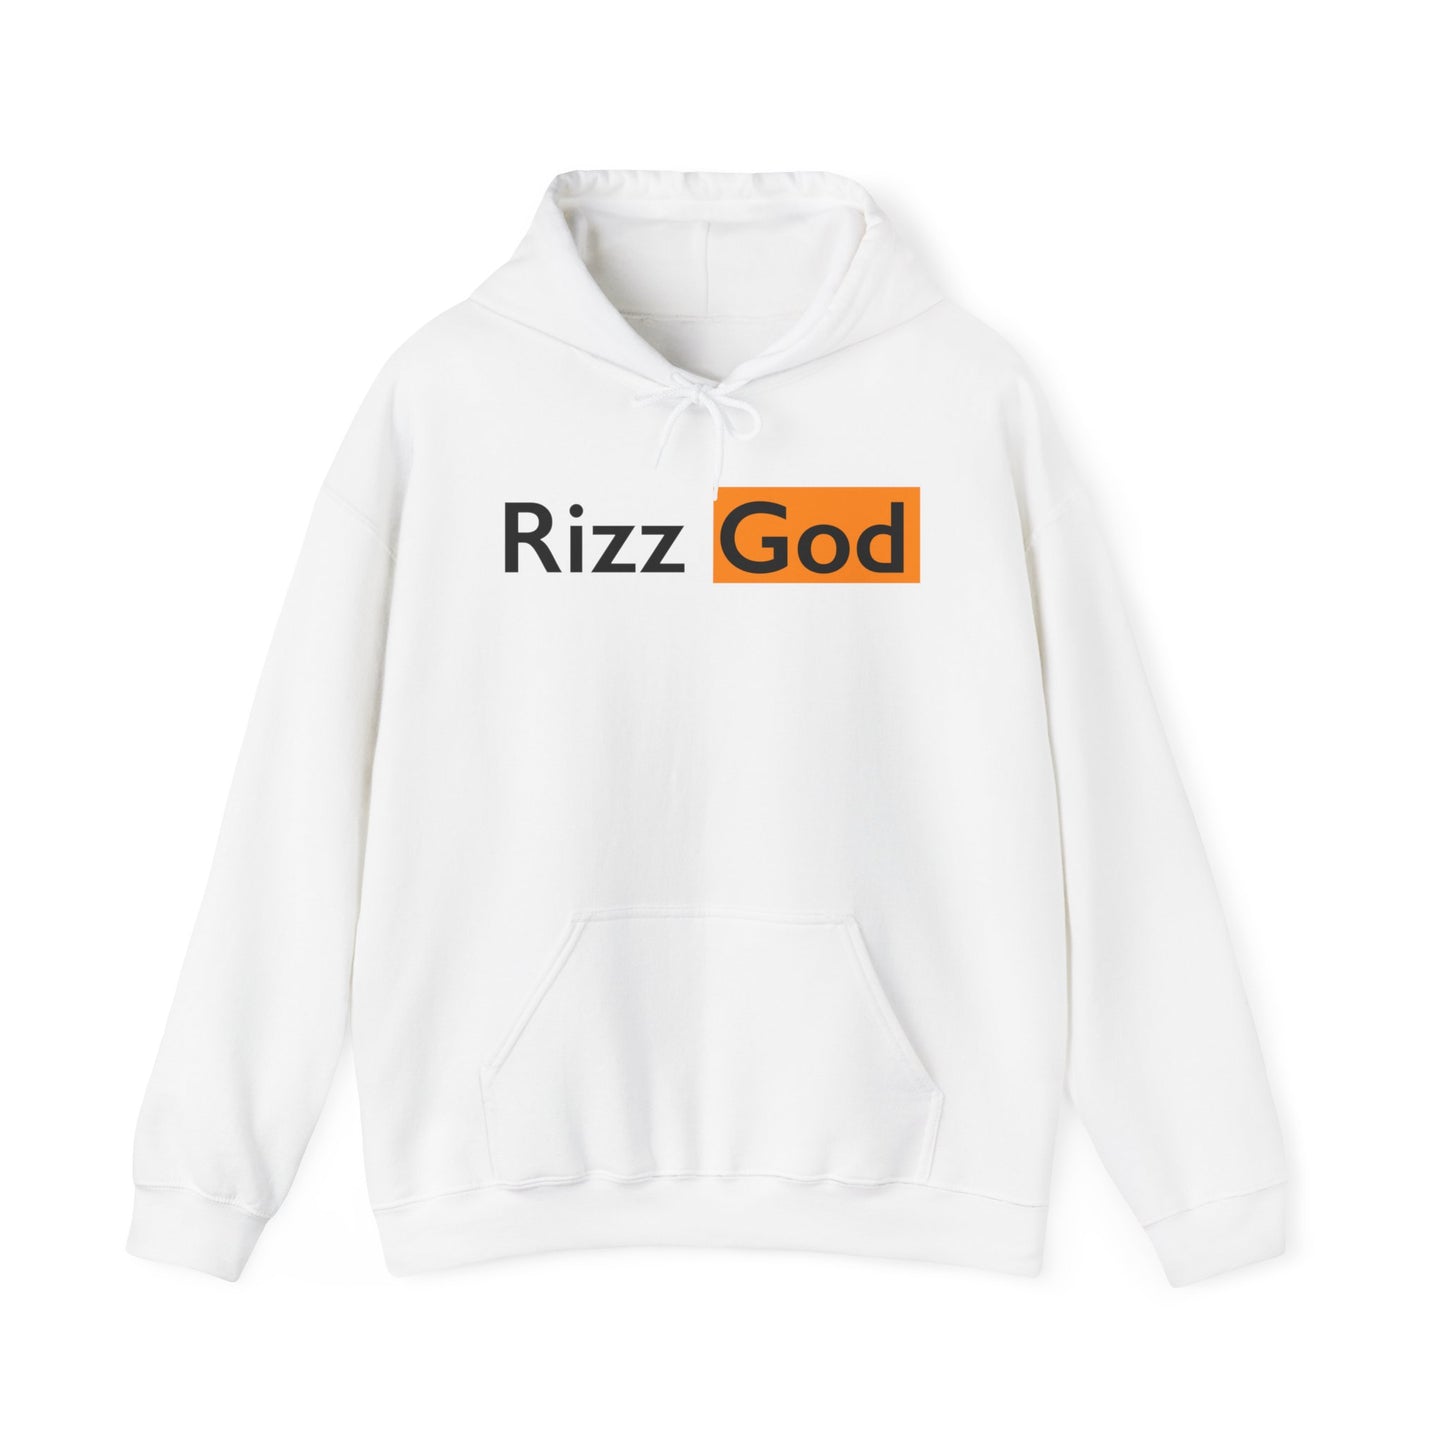 Rizz God